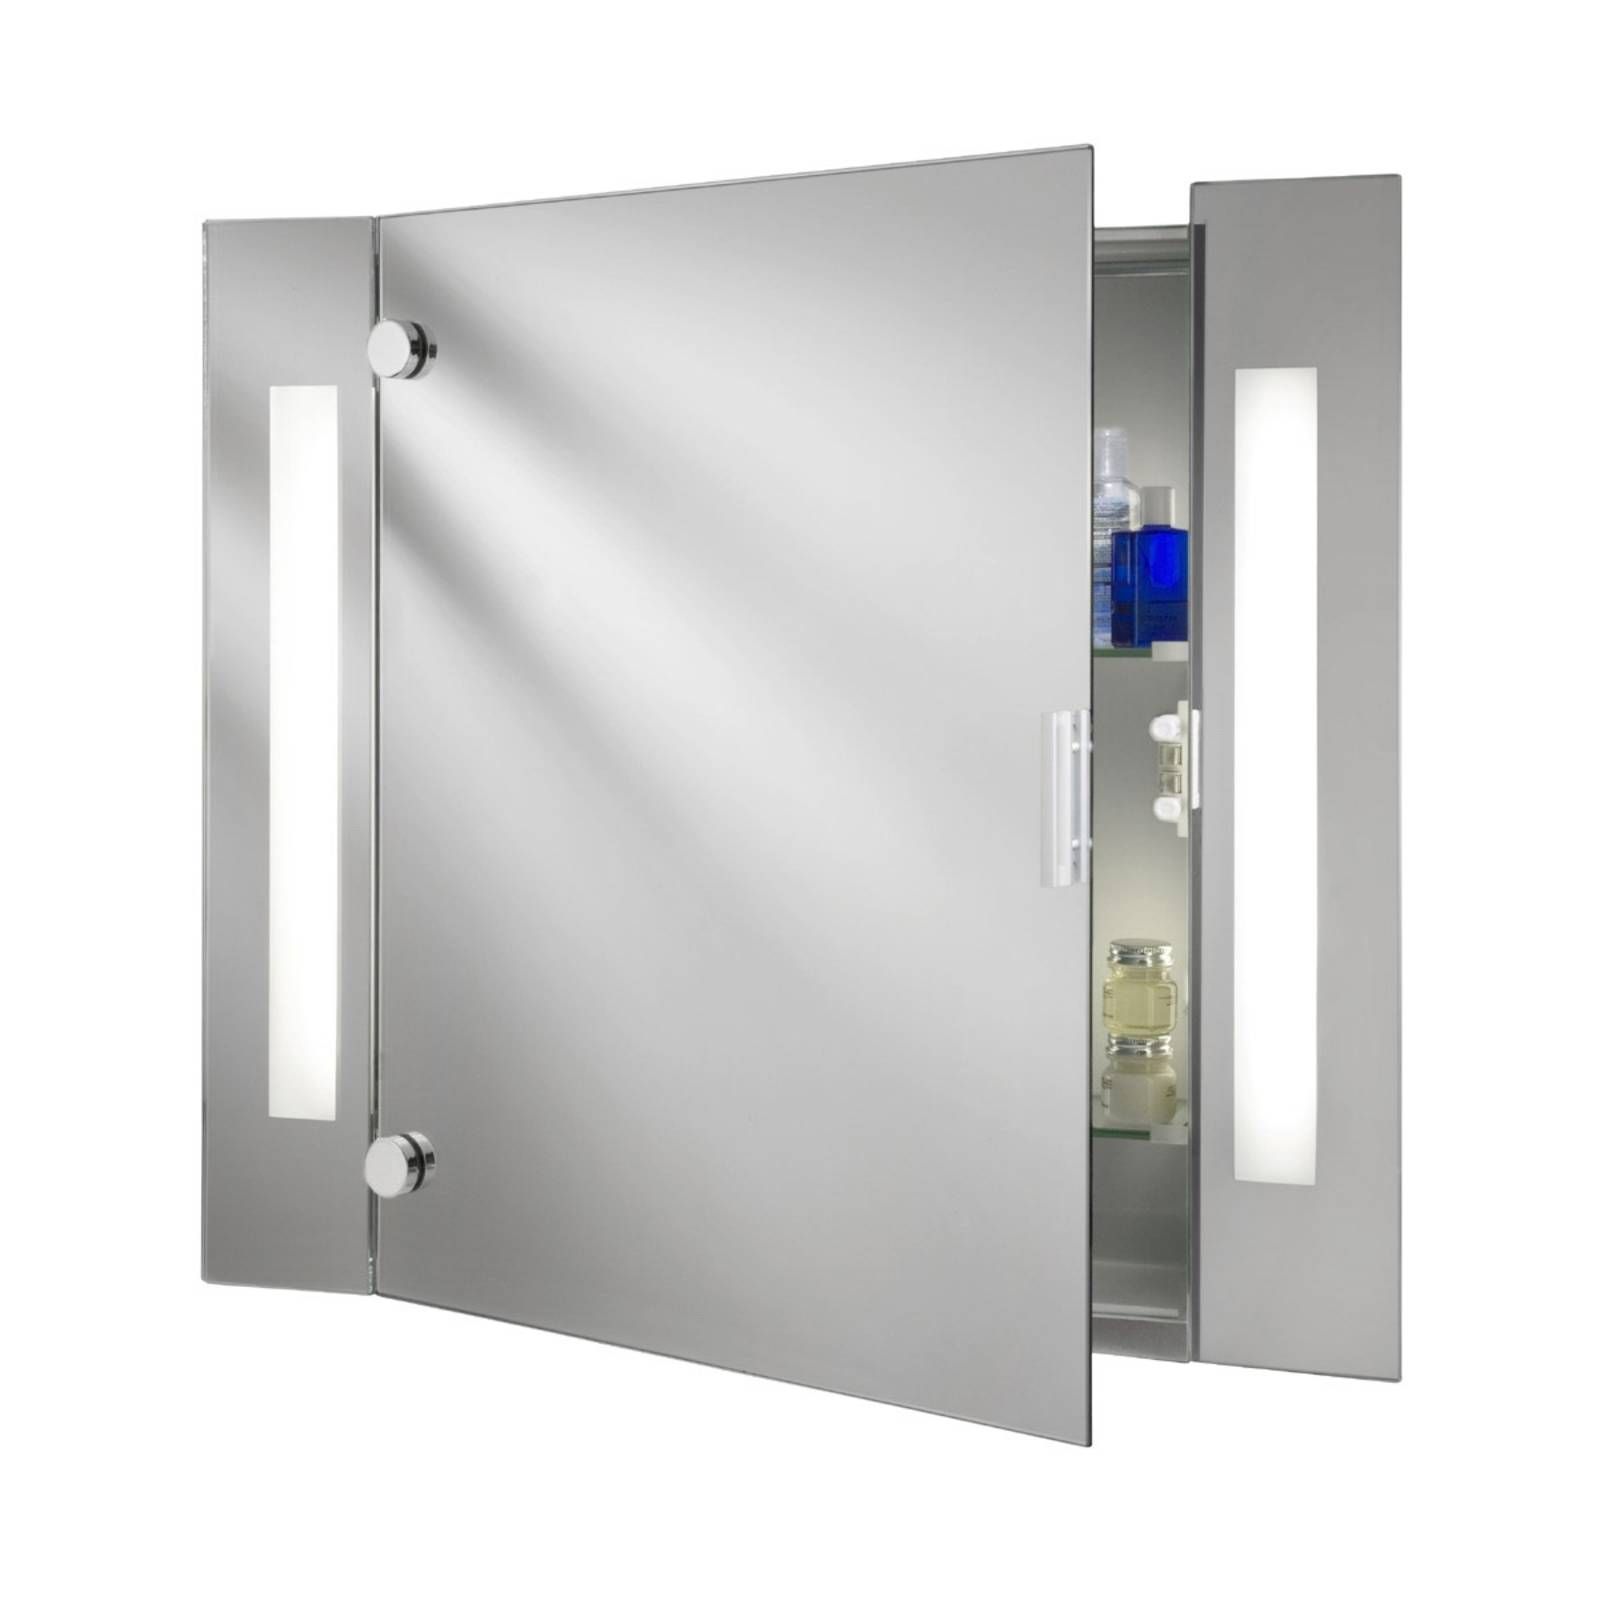 Searchlight Moderná zrkadlová skrinka Silva s osvetlením, Kúpeľňa, sklo, kovový plech, G13, 15W, Energialuokka: G, L: 66 cm, K: 60cm